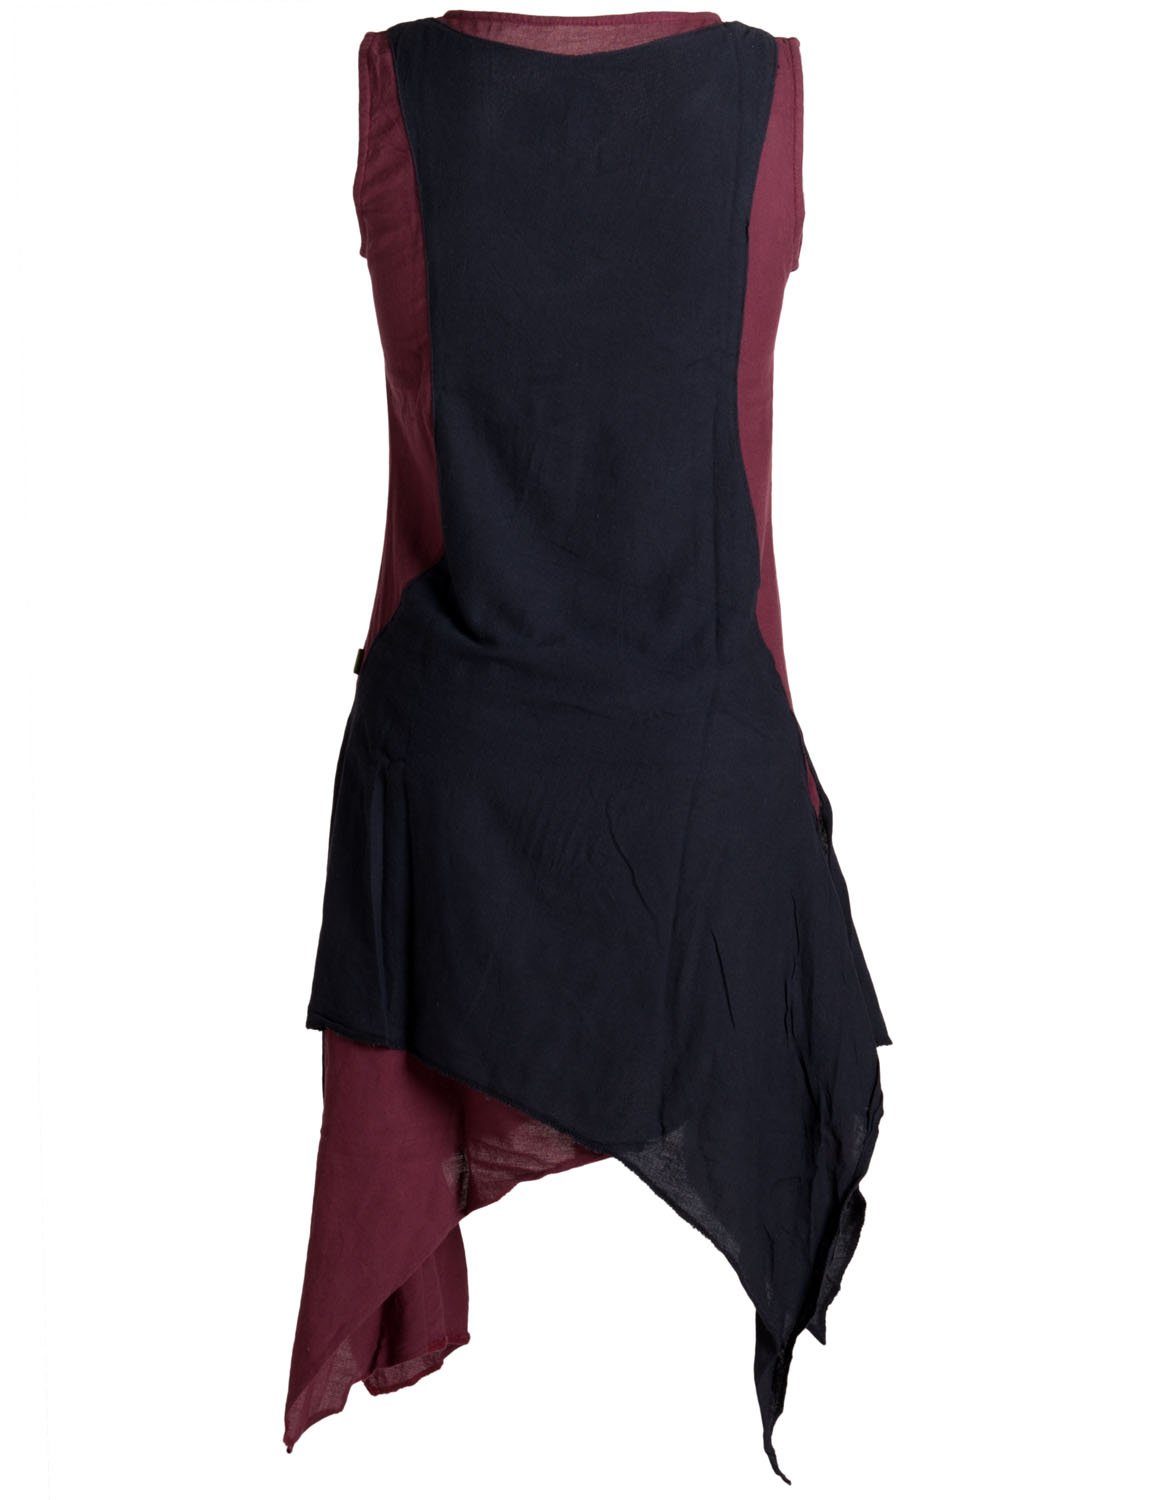 Vishes Sommerkleid Goa, Boho, Ärmelloses Kleid Hippie handgewebte Style Lagenlook dunkelrot-schwarz Baumwolle